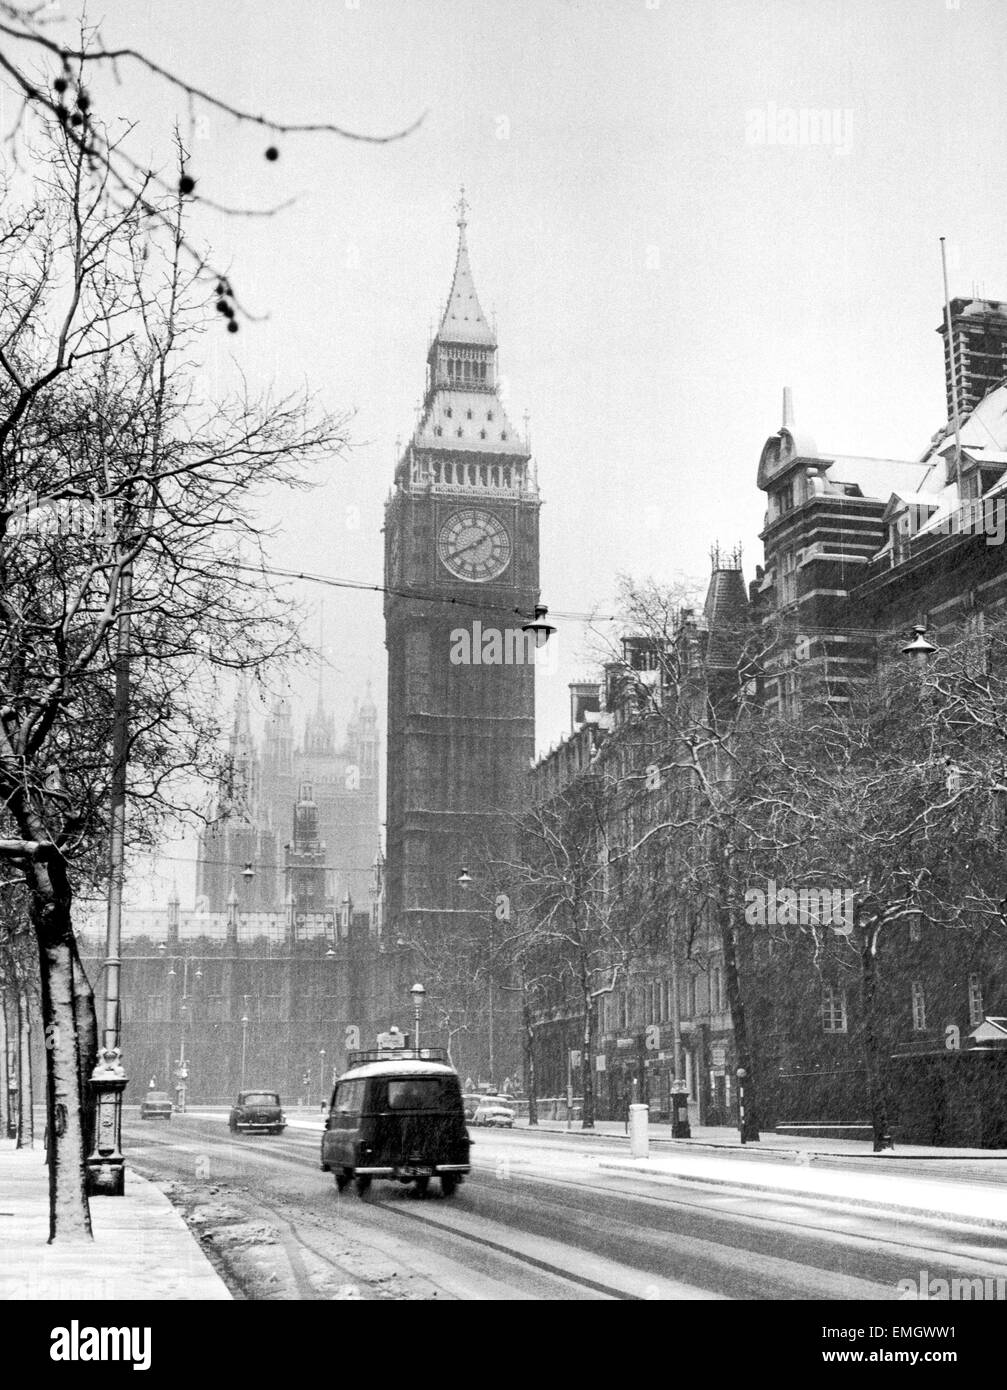 Big Ben hinter der Zeit. Big Ben litt das Wetter, wenn es Chimming zehnminütiger Verspätung begann. Die Ursache war gefrorenen Schnee auf der Unterseite der Nordwand die der zwei Tonnen schweren Minutenzeiger verlangsamt. Unser Bild zeigt: Eine winterliche Szene in Westminster an Silvester. 31. Dezember 1961 Stockfoto